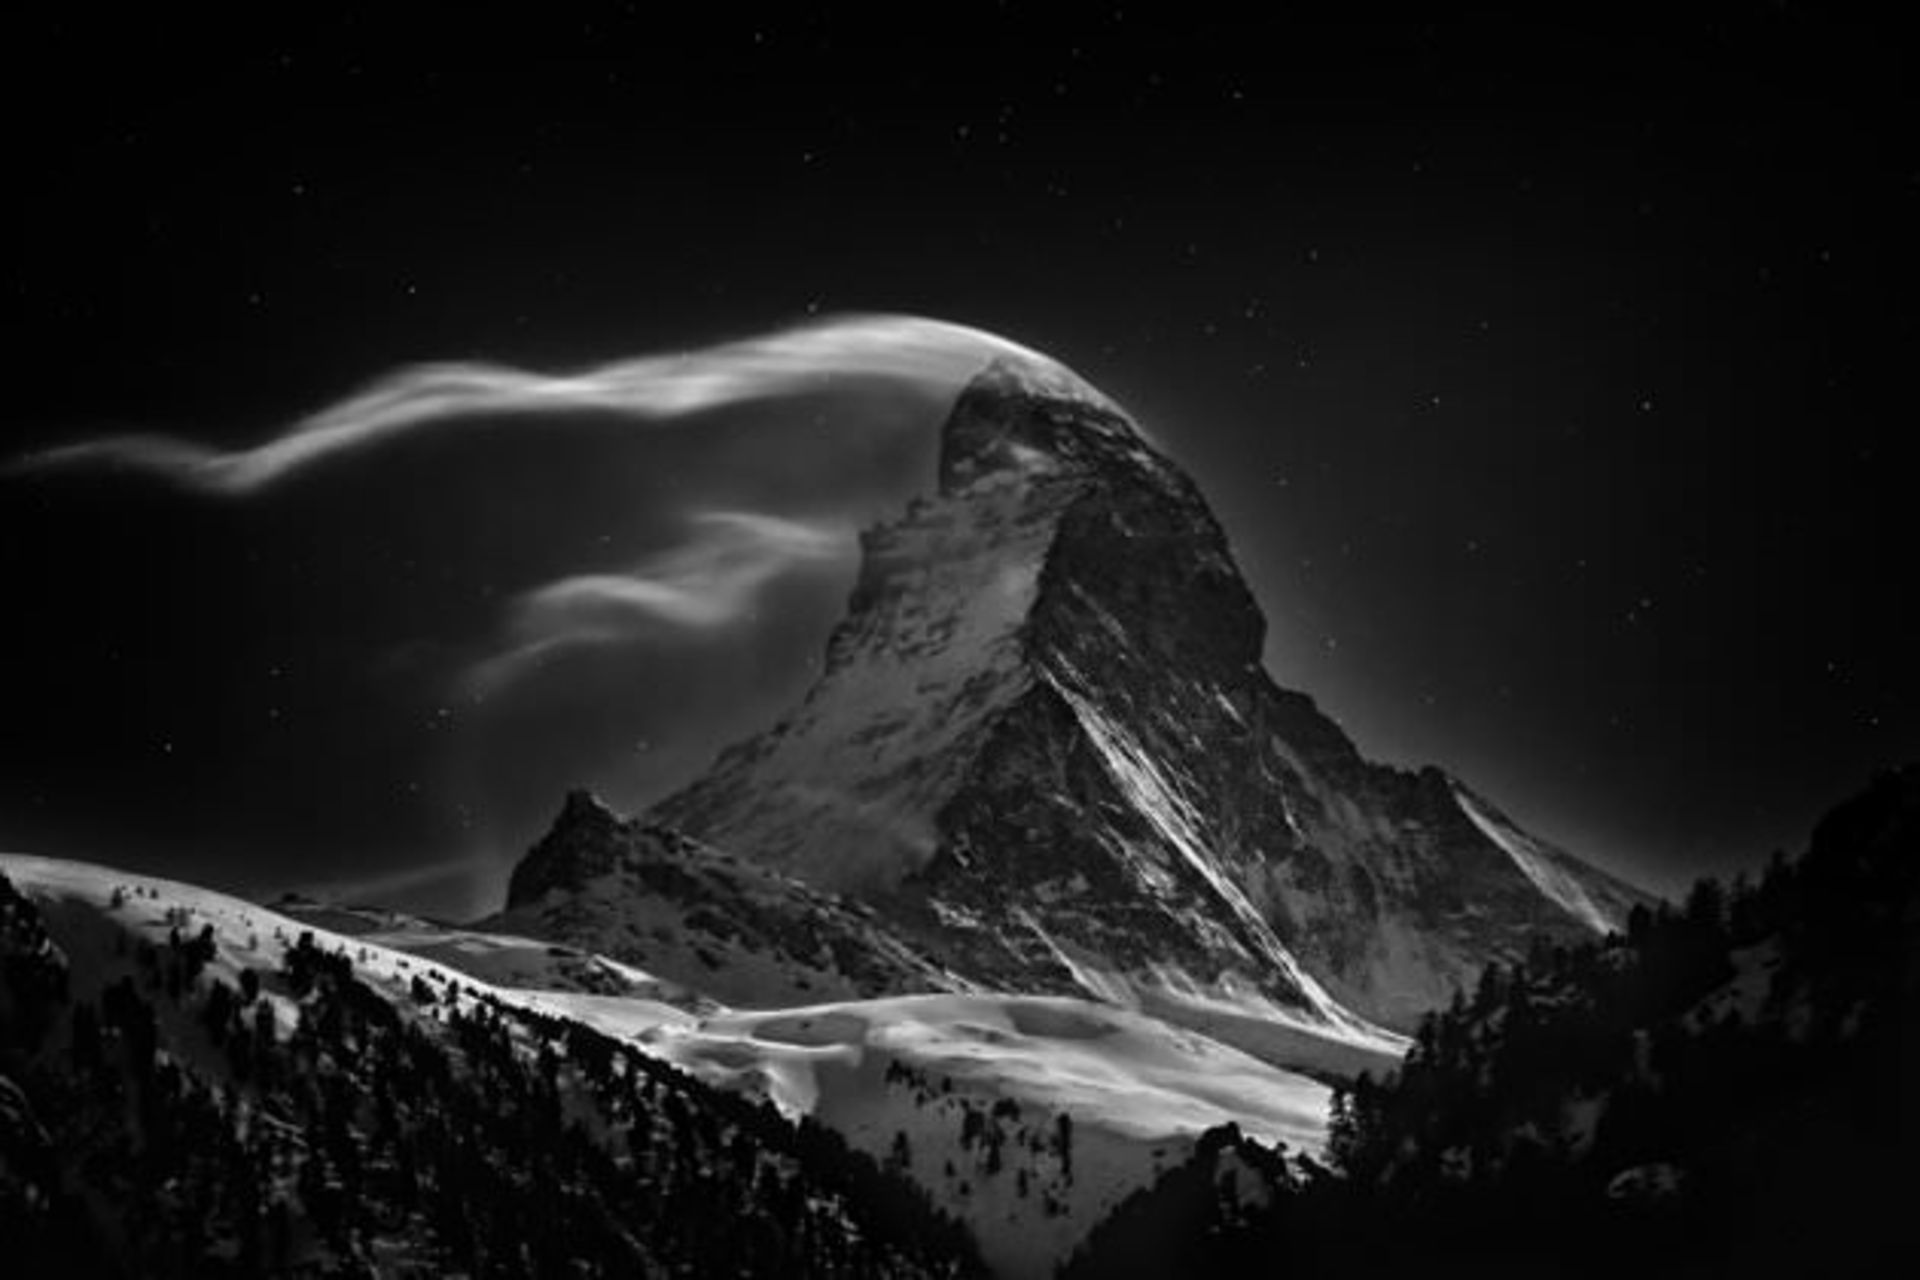 02 The-Matterhorn-jpg 175247